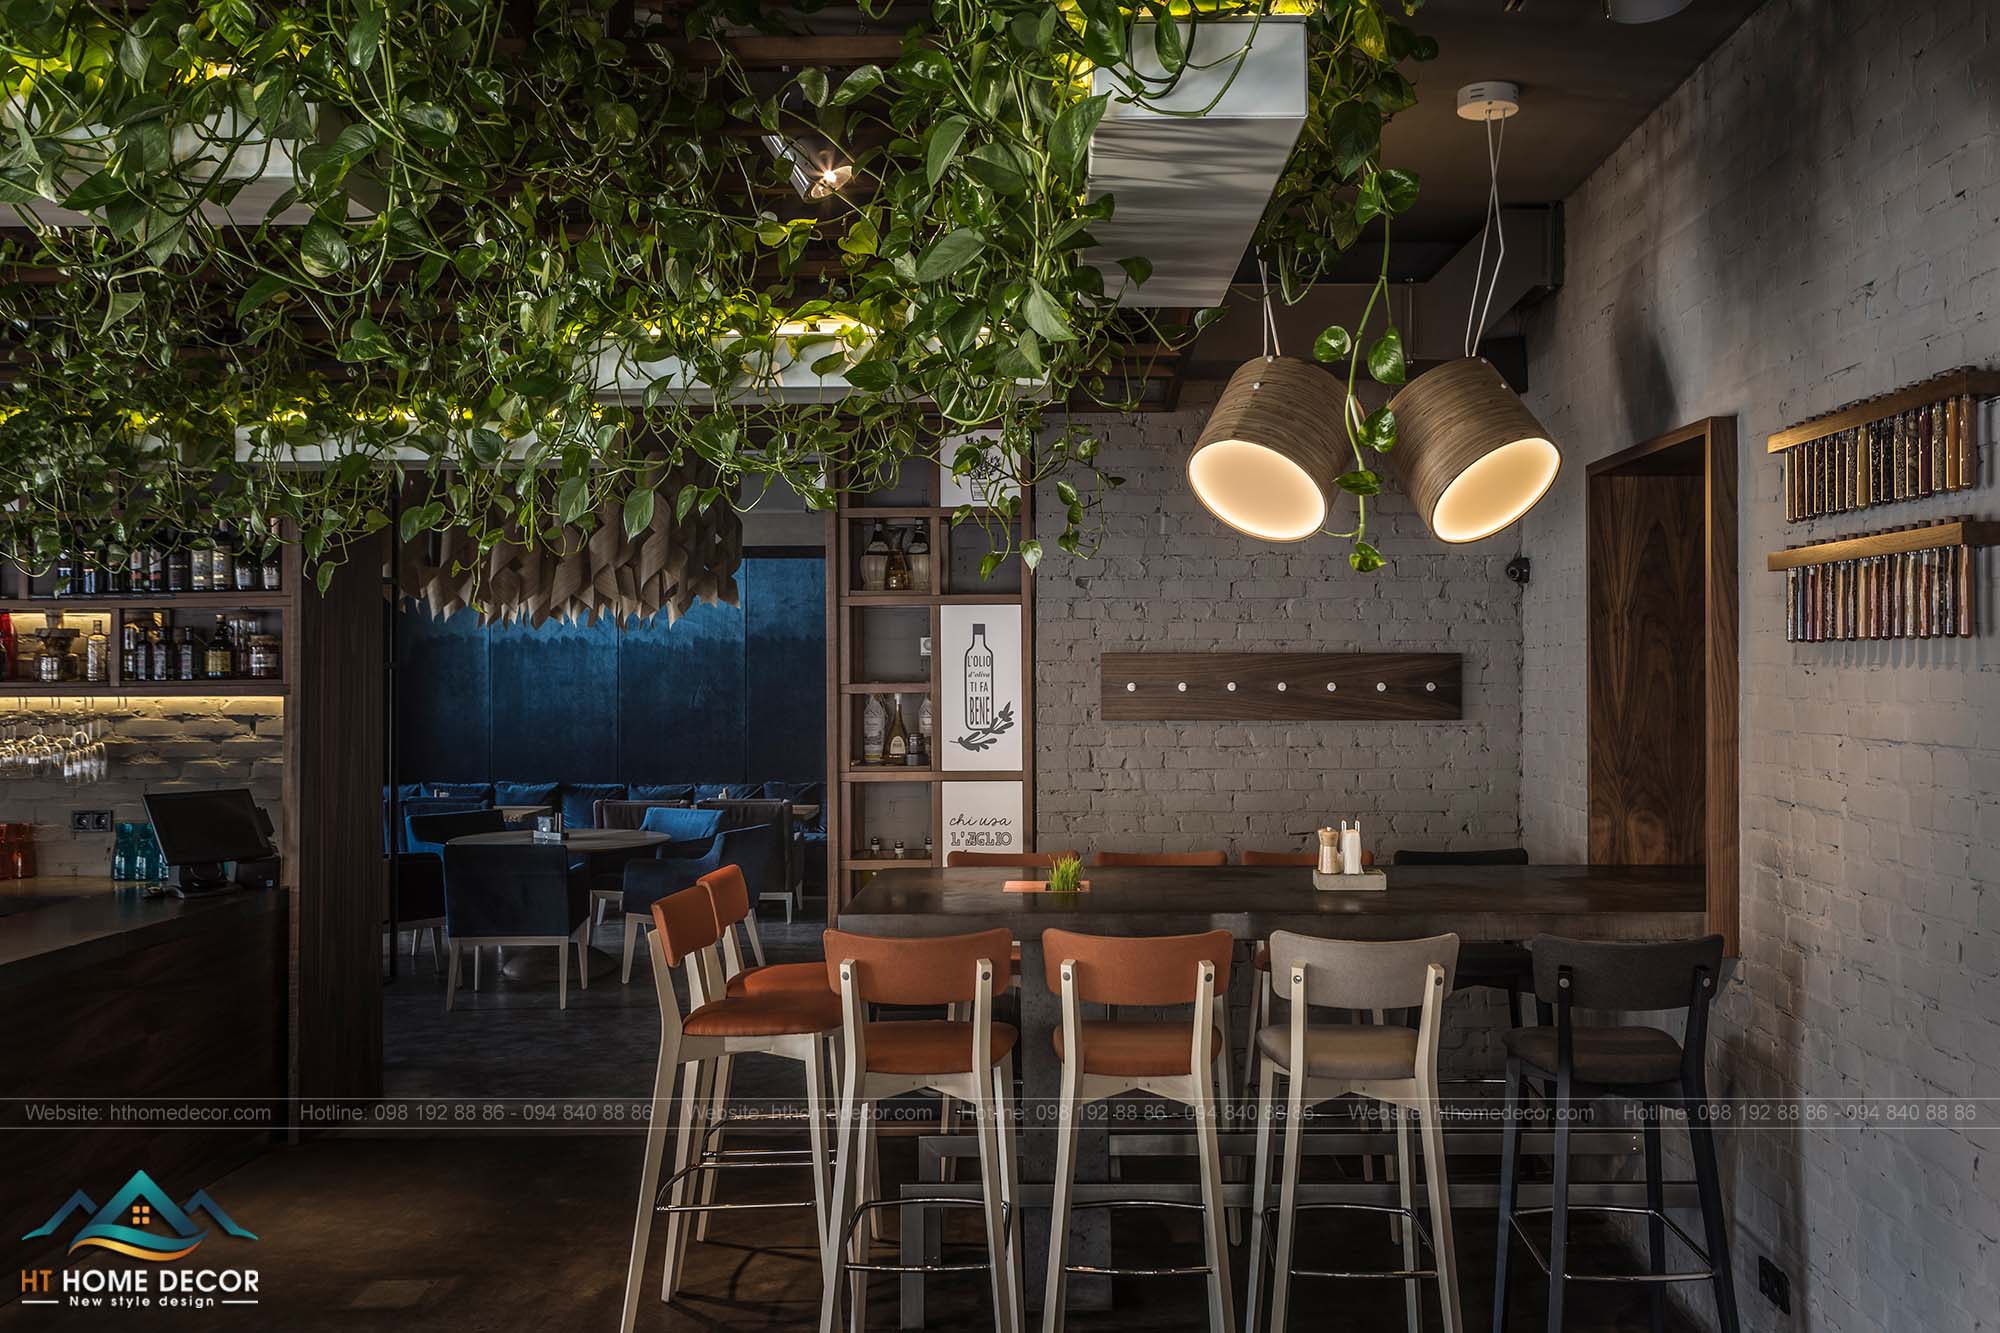 Hội trường ban đêm của nội thất nhà hàng, lưới gỗ cấu trúc lên trần nhà làm ẩn kĩ thuật và làm mới không gian của nhà hàng.